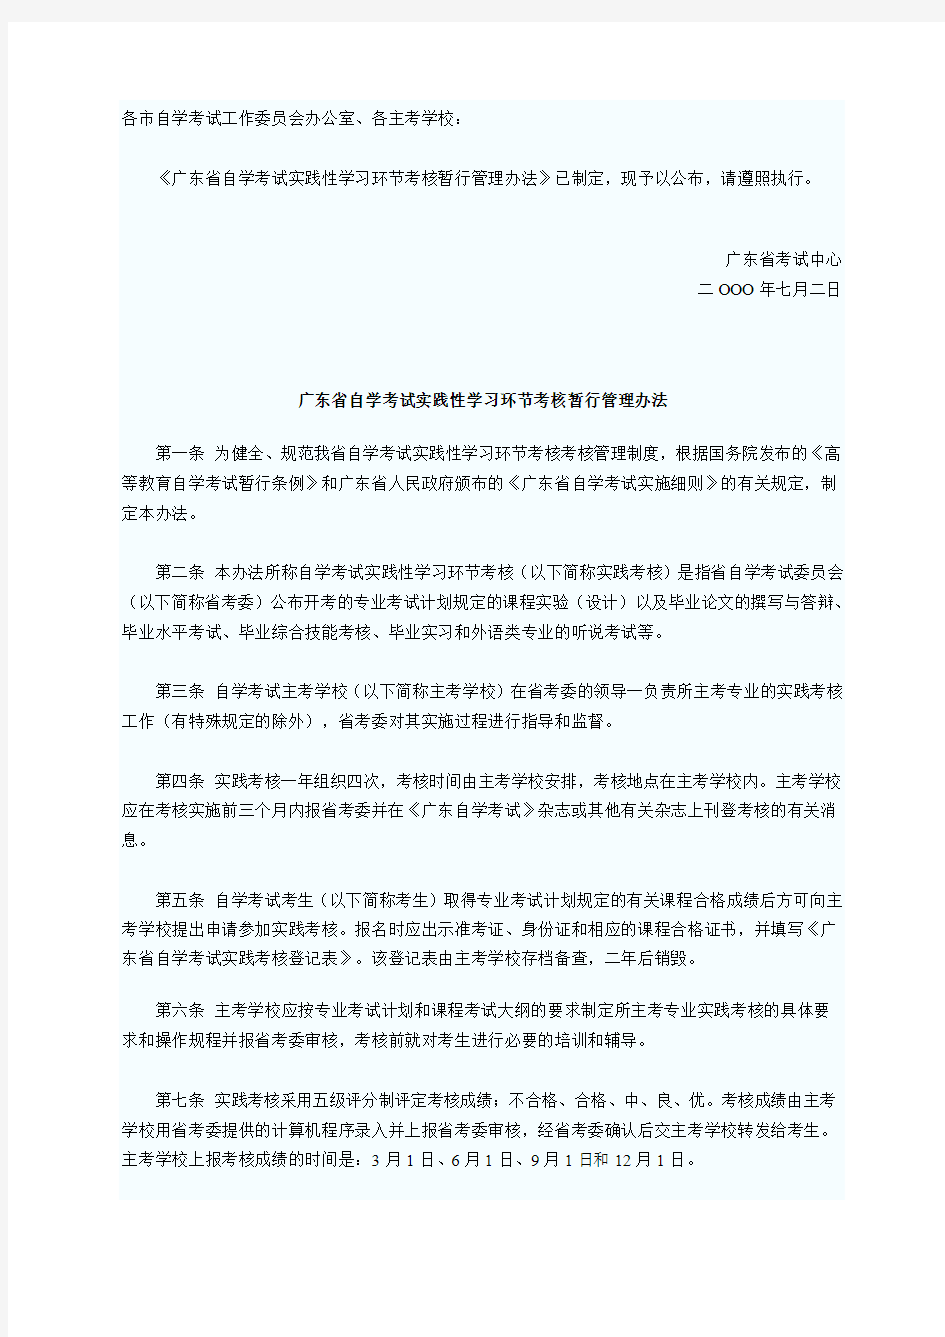 广东省自学考试实践考核管理办法